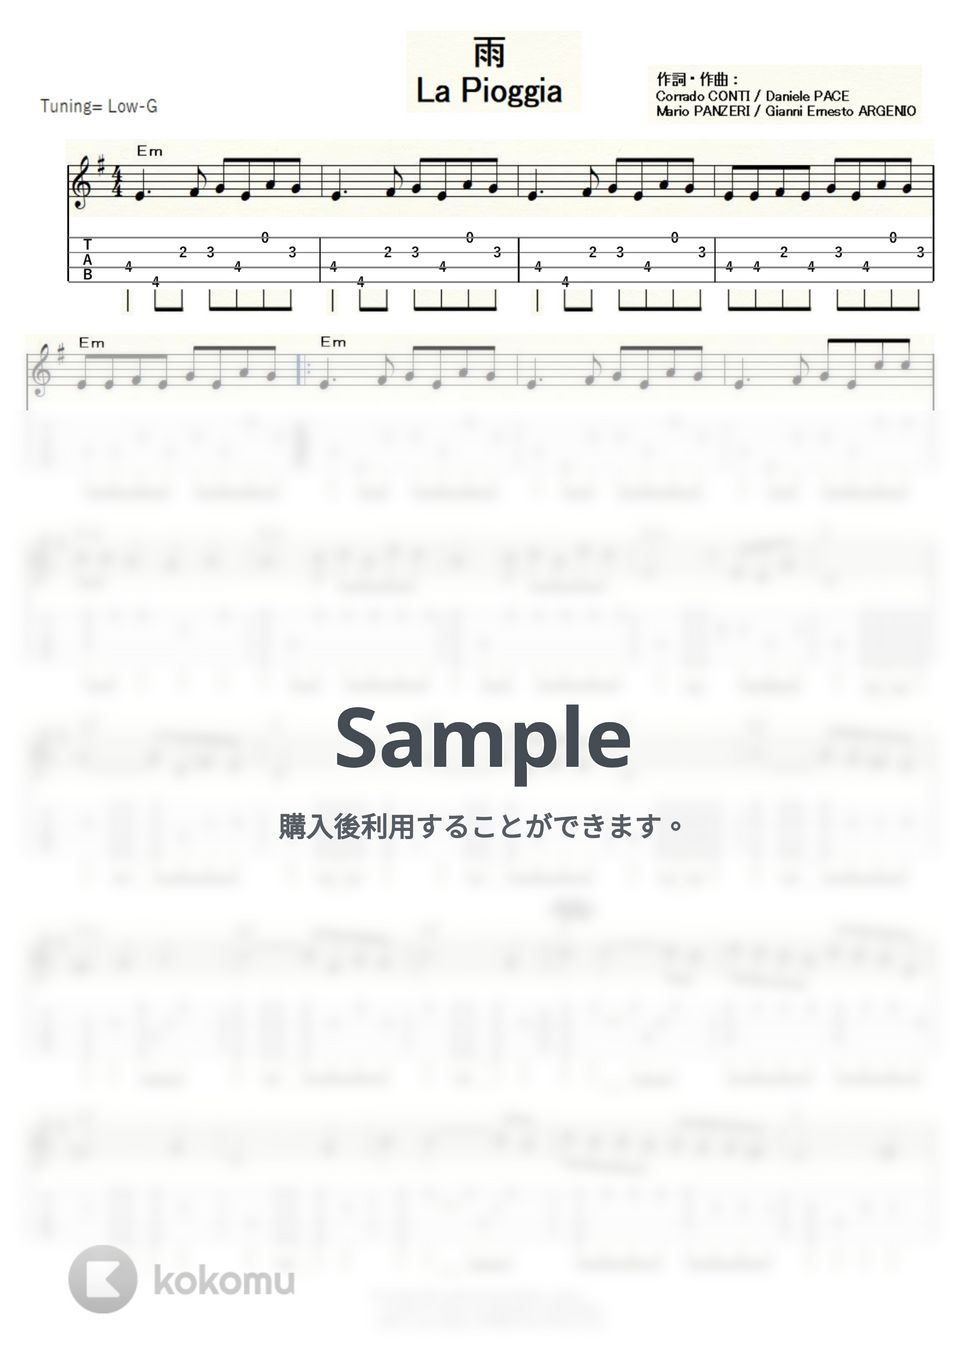 ジリオラ・チンクェッティ - 雨 ～La Pioggia～ (ｳｸﾚﾚｿﾛ/Low-G/中級) by ukulelepapa